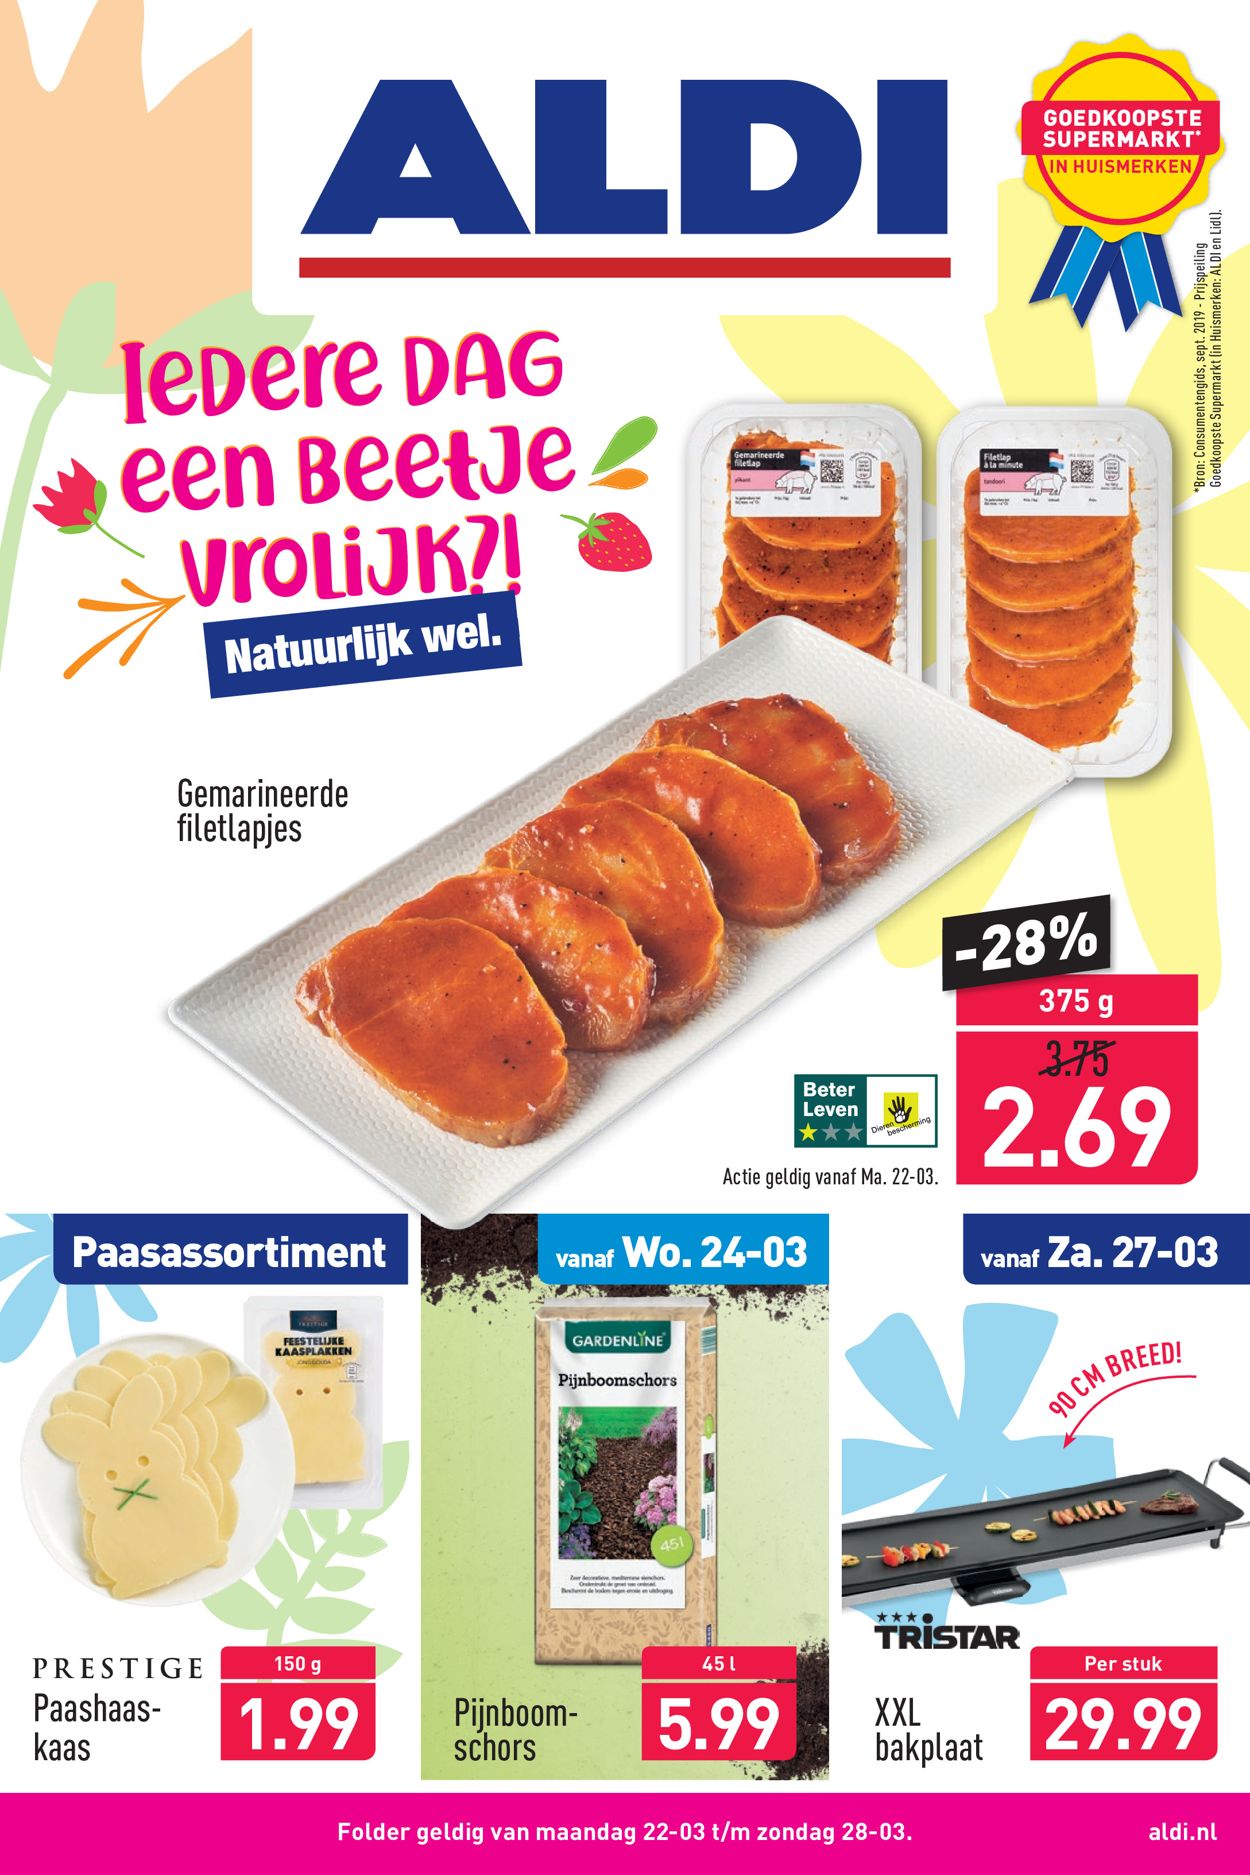 Aldi Promotionele advertentie wekelijksefolders.nl